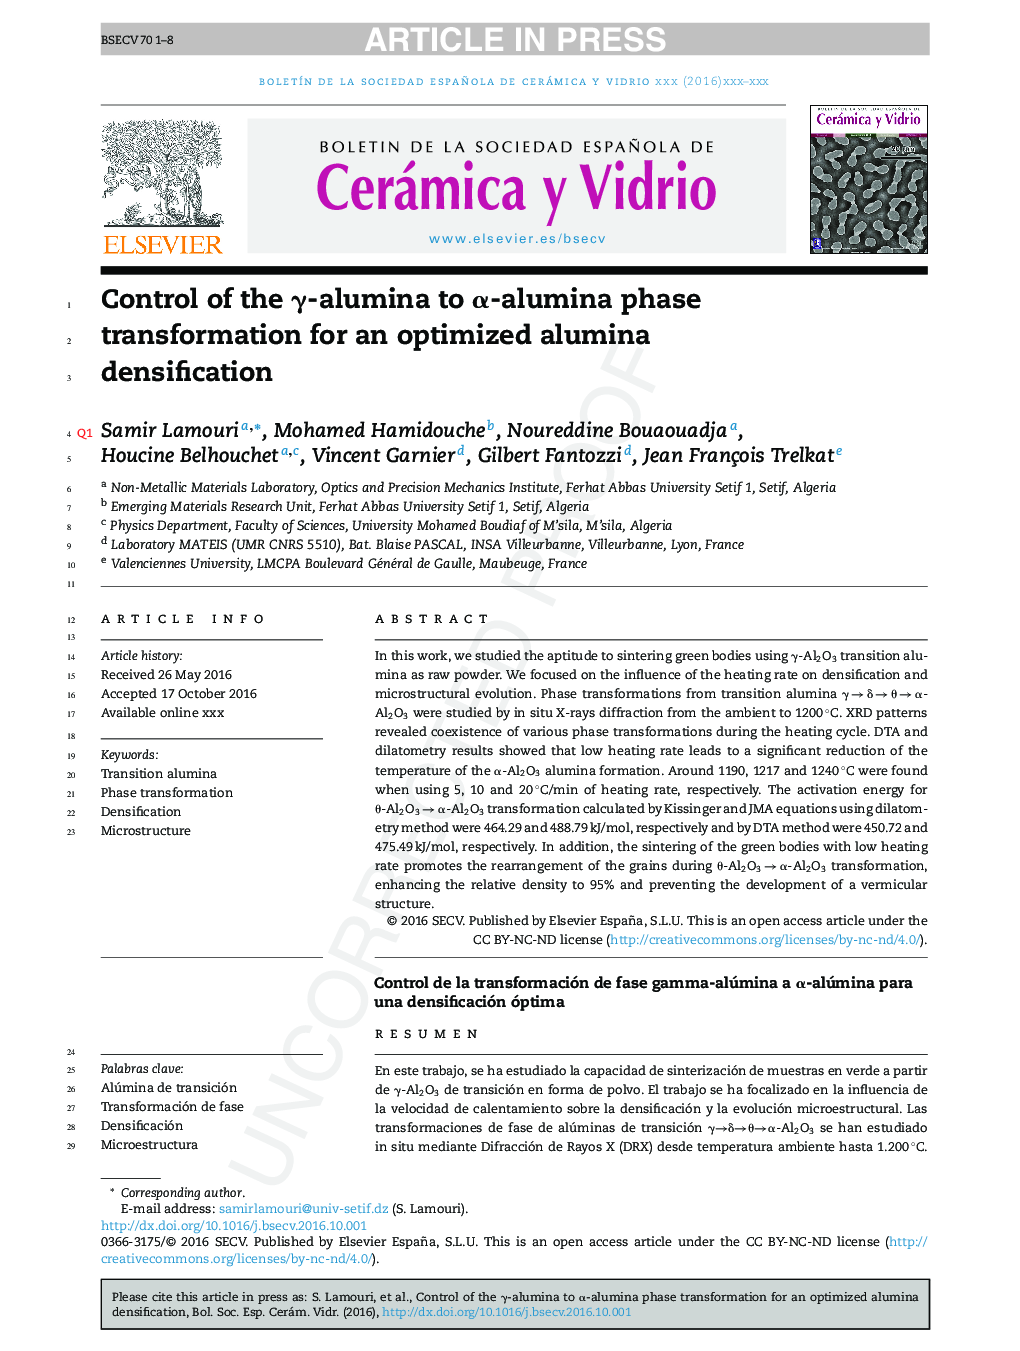 Control of the Î³-alumina to Î±-alumina phase transformation for an optimized alumina densification